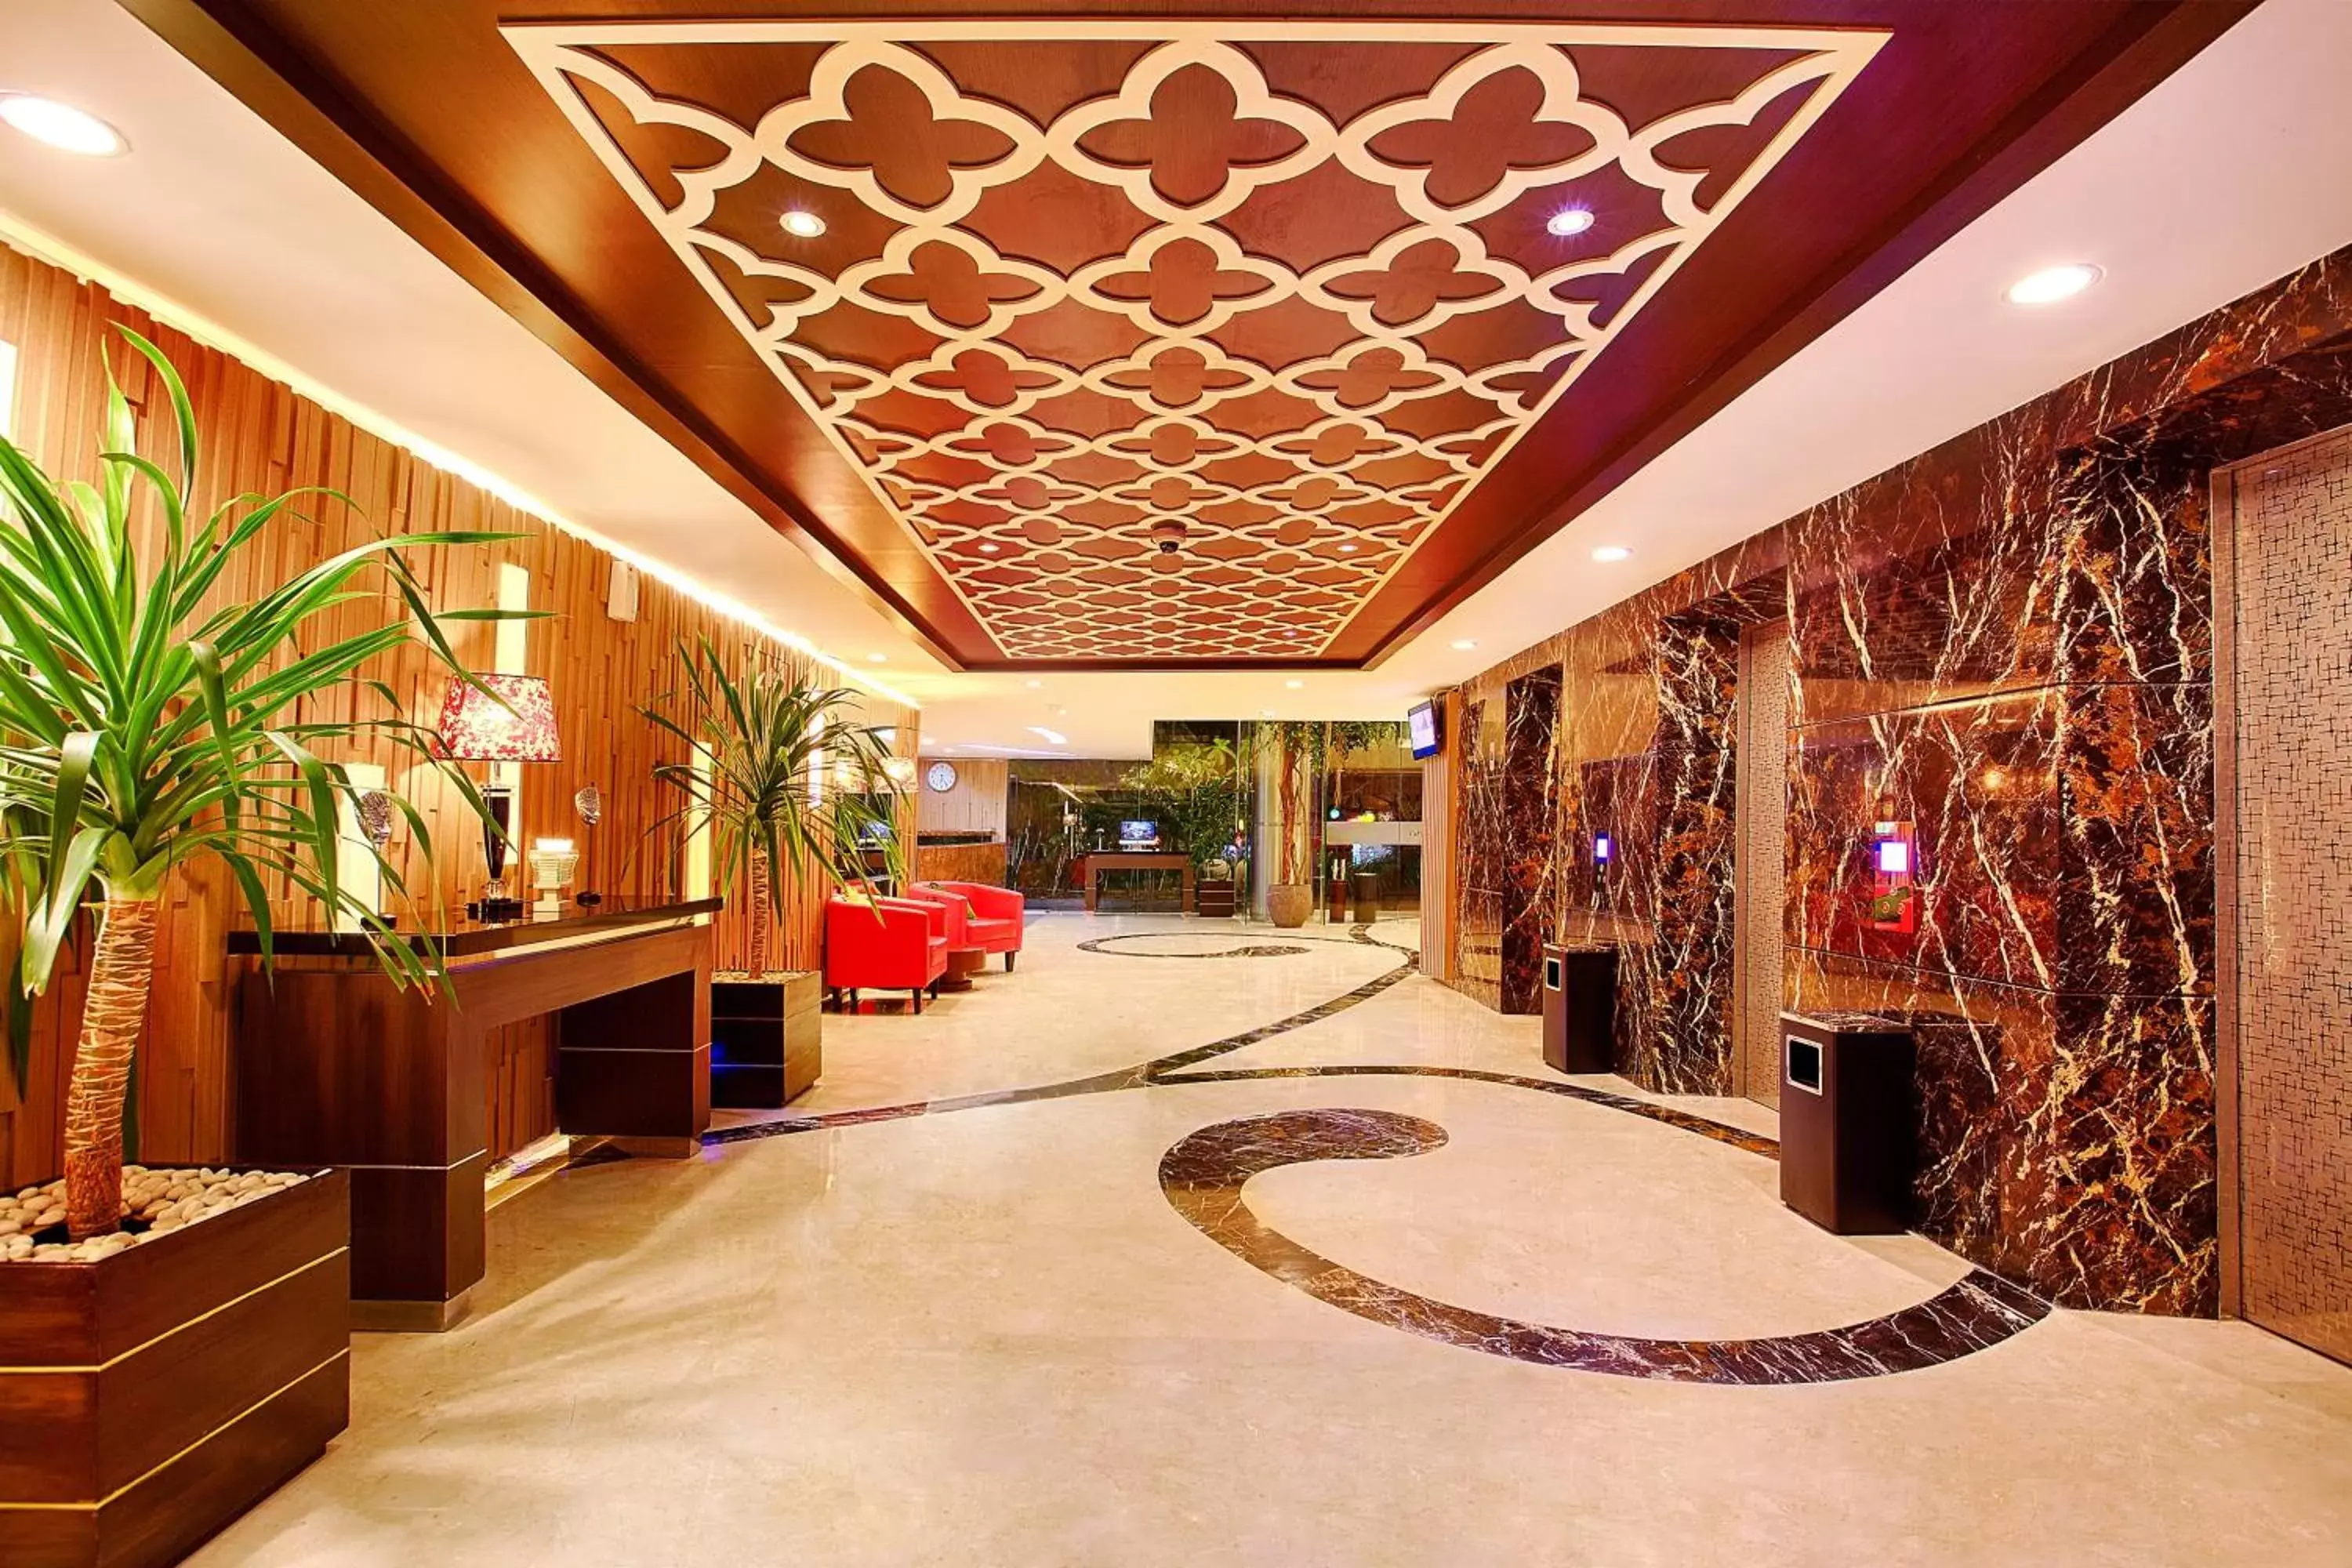 Decorative detail, Lobby/Reception in The Alana Surabaya